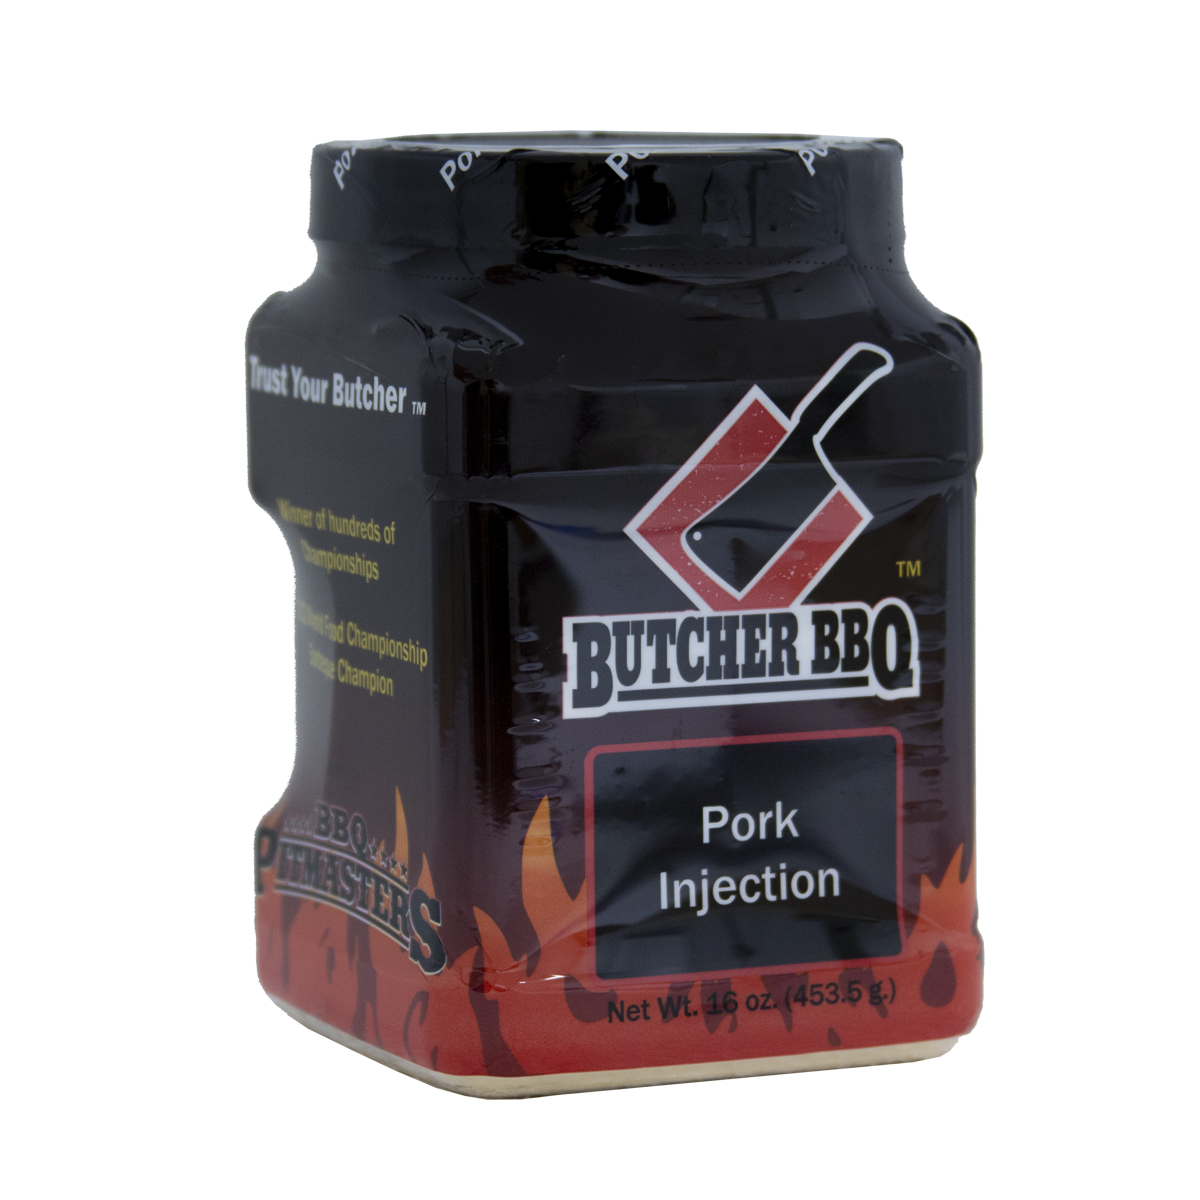 injection pour porc 16oz par Butcher BBQ vendu par BBQQUEBEC.com